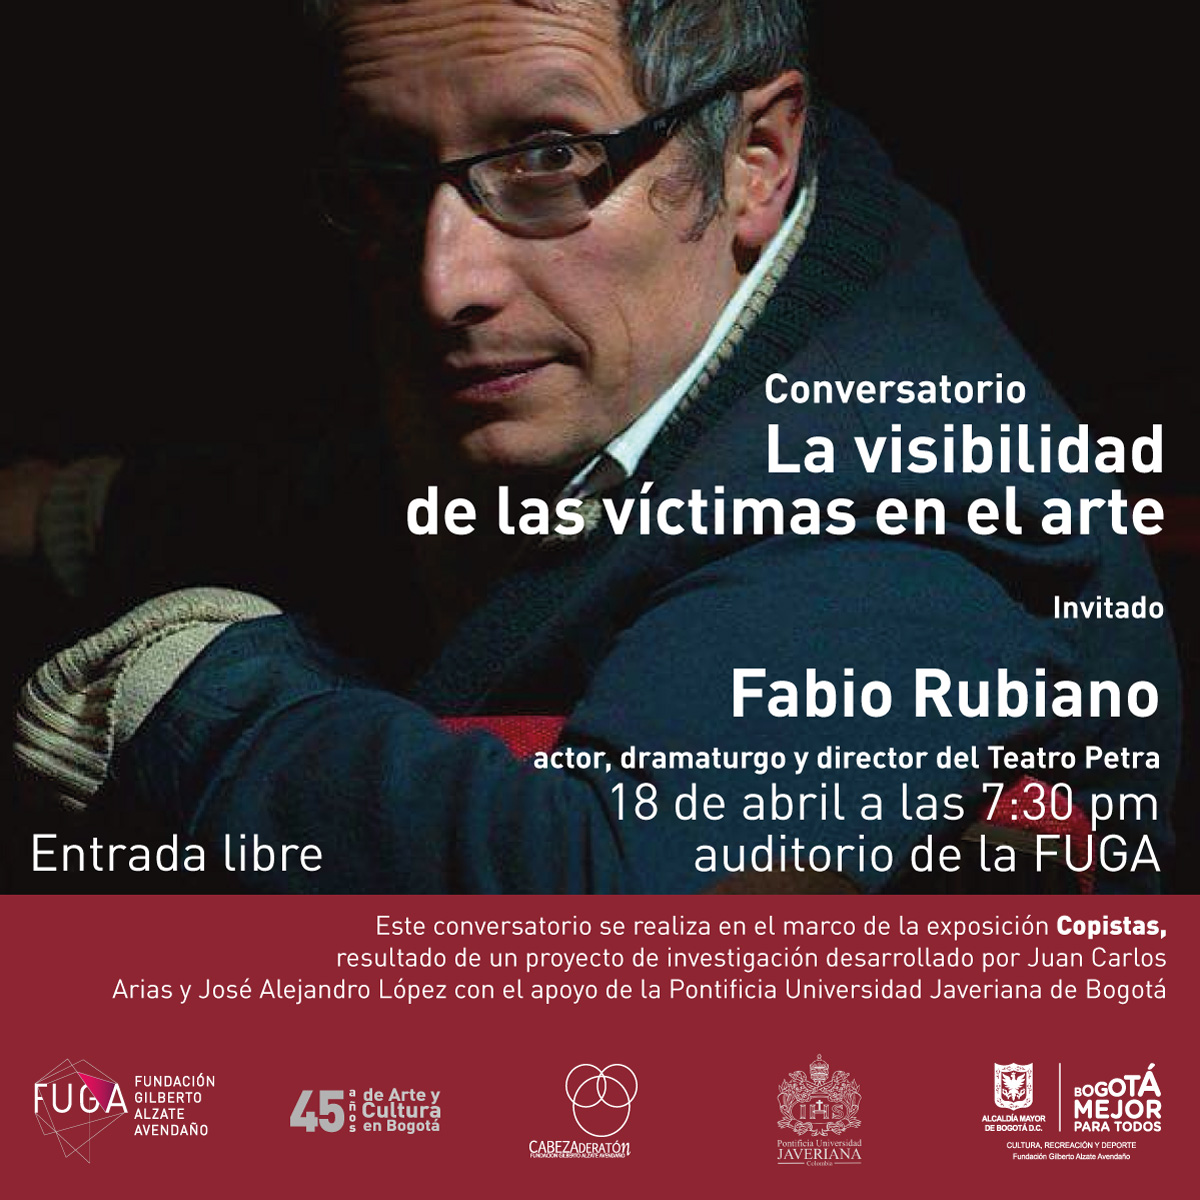 Conversatorio con Fabio Rubiano La Visibilidad de las Víctimas en el Arte